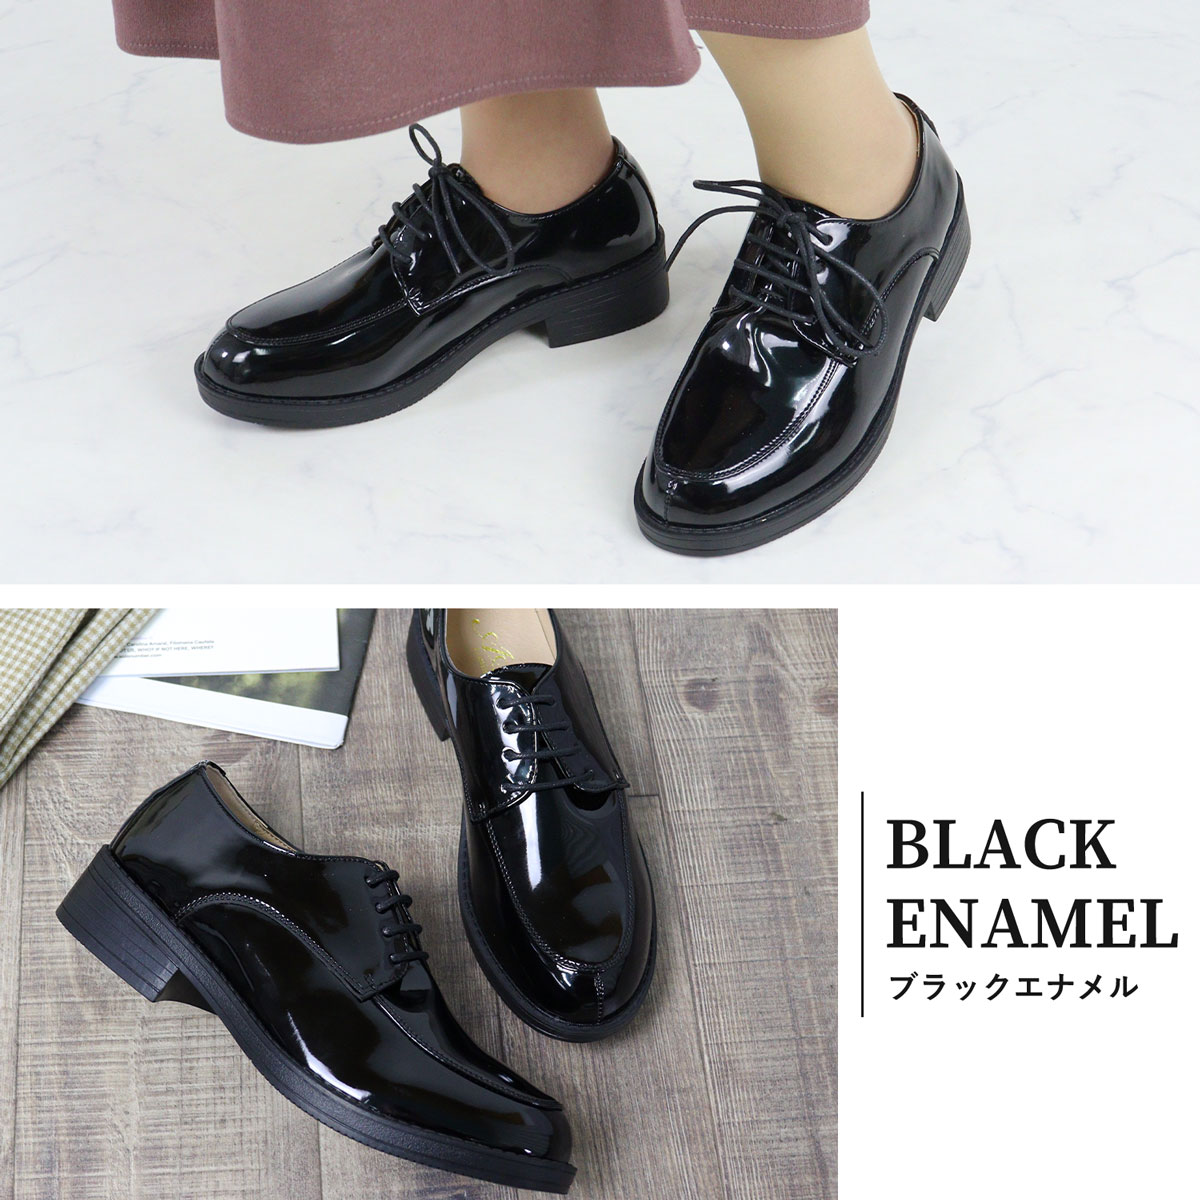  гонки выше обувь женский чёрный .. обувь 3.5cm каблук большой размер No.3576 22.5-27cm AAA+ комплект скидка объект 1 пара включая налог 3025 иен 